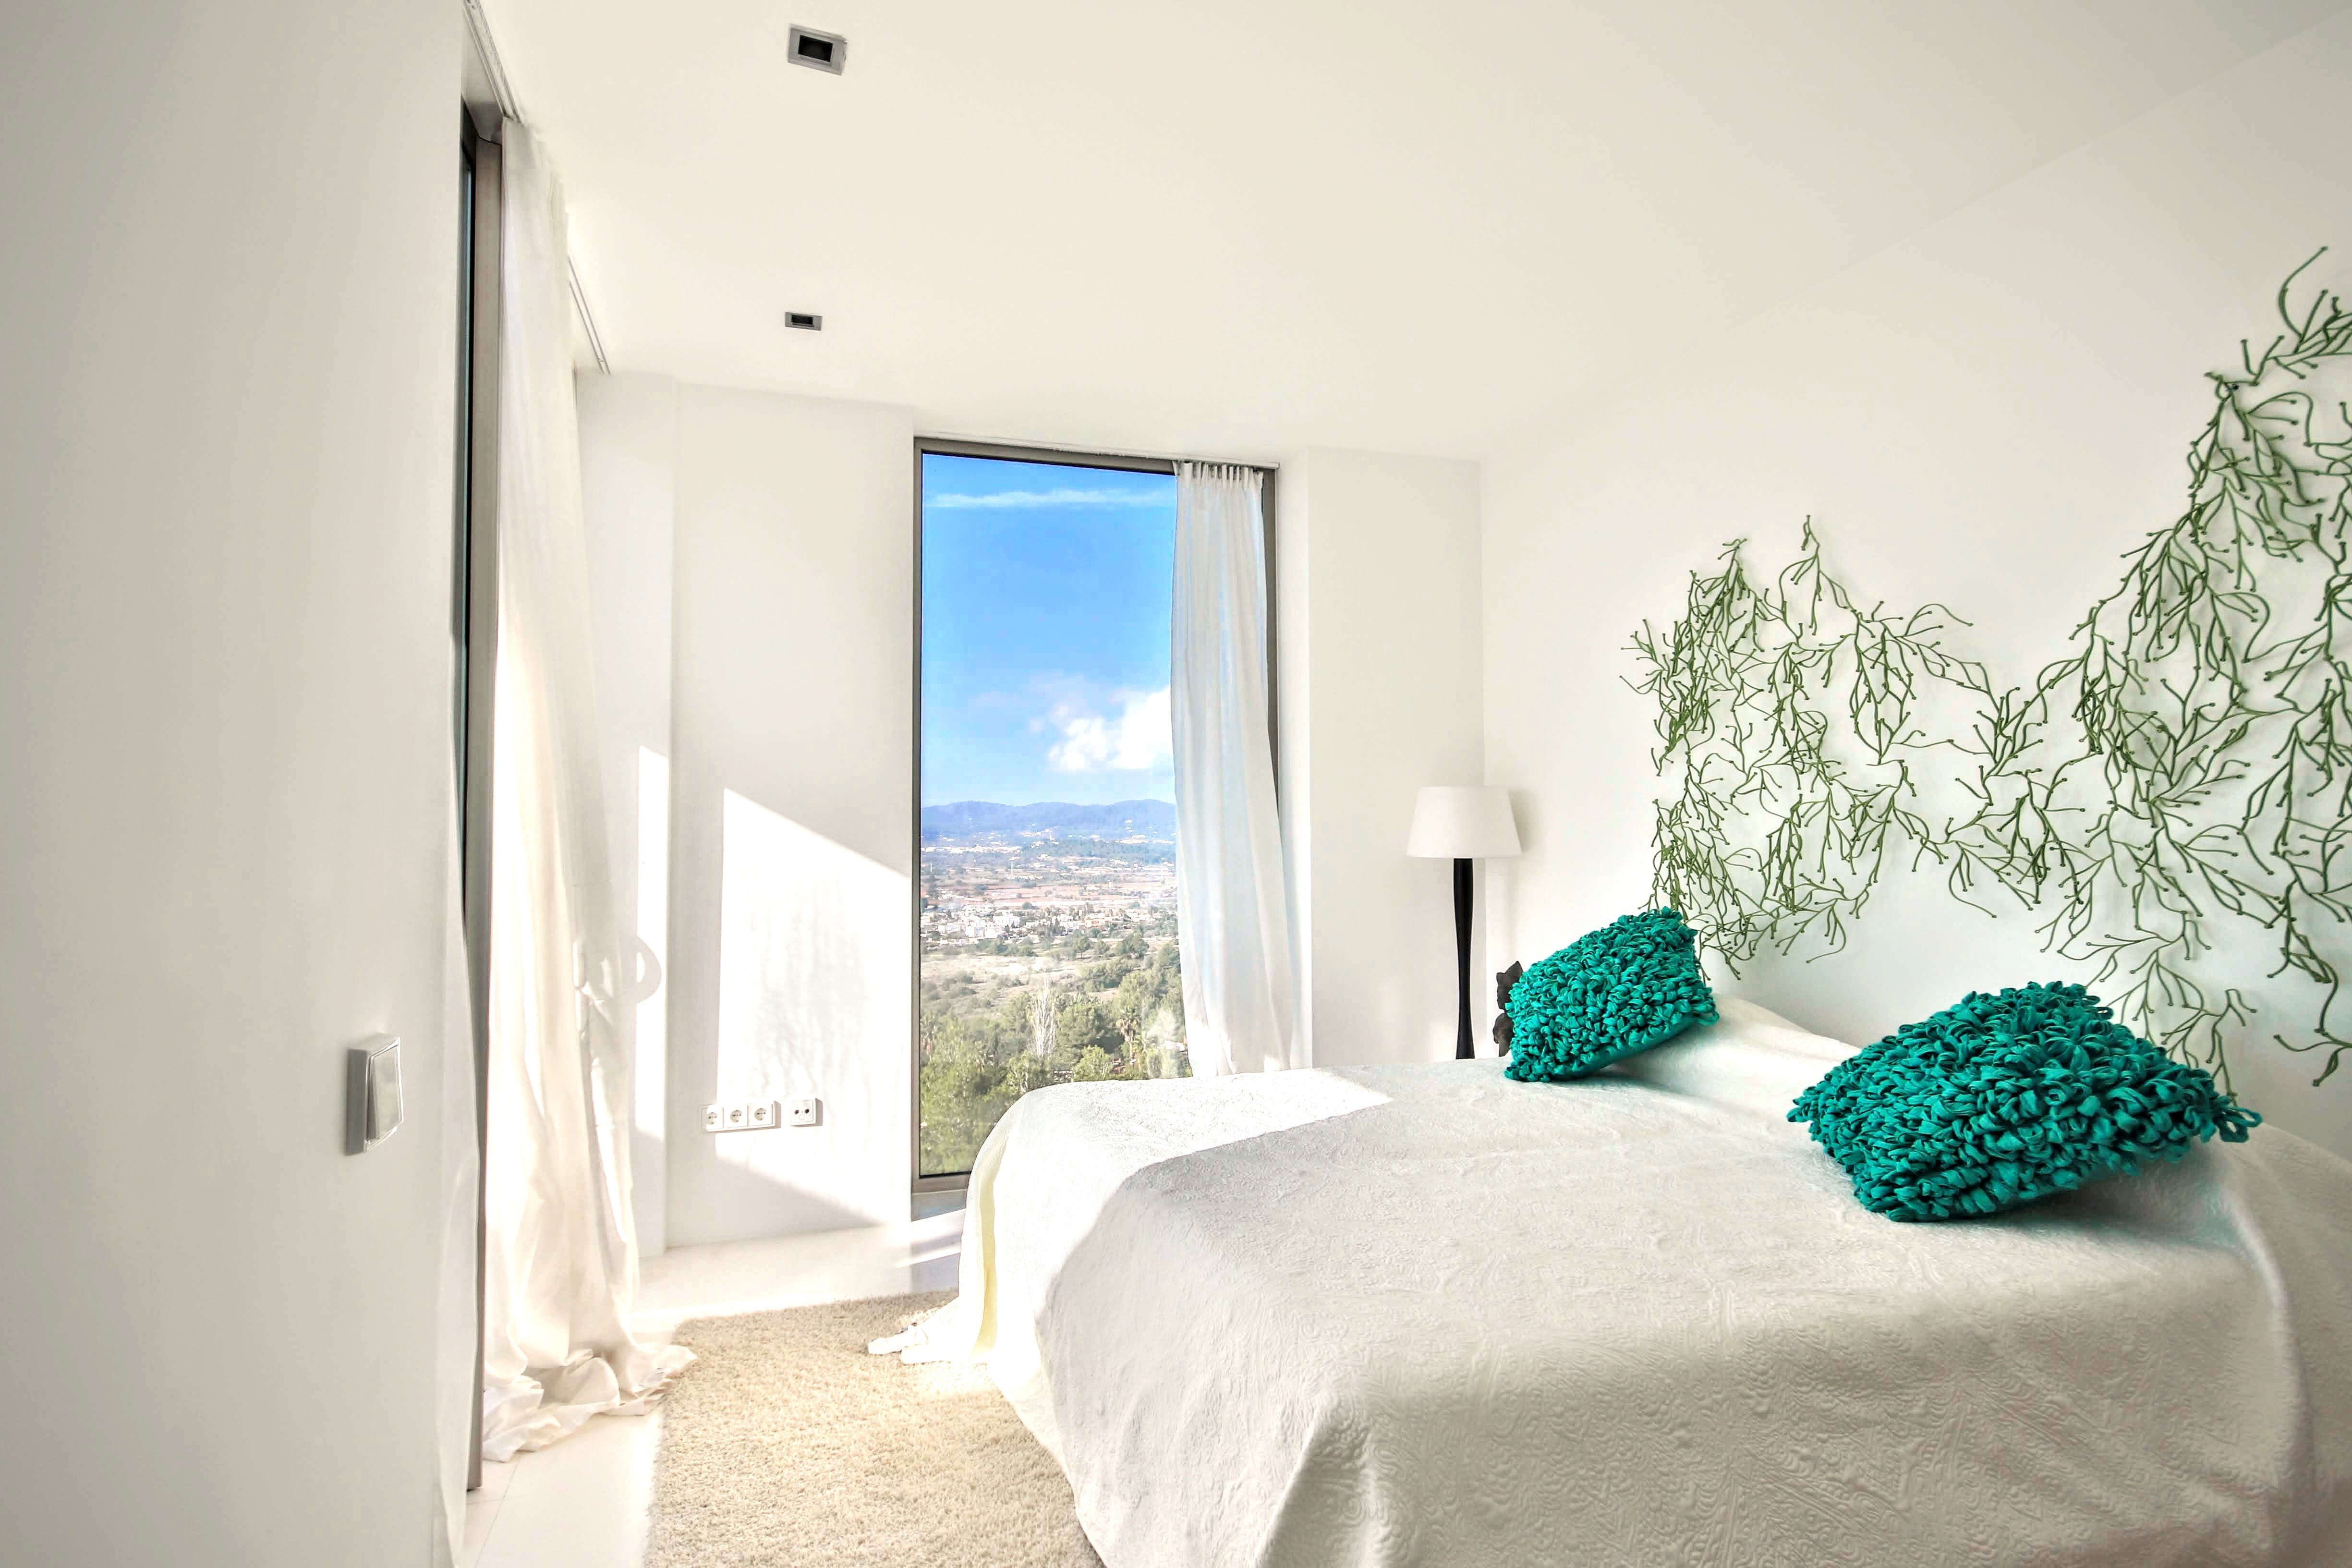 Fantastic villa in Ibiza with panoramic views